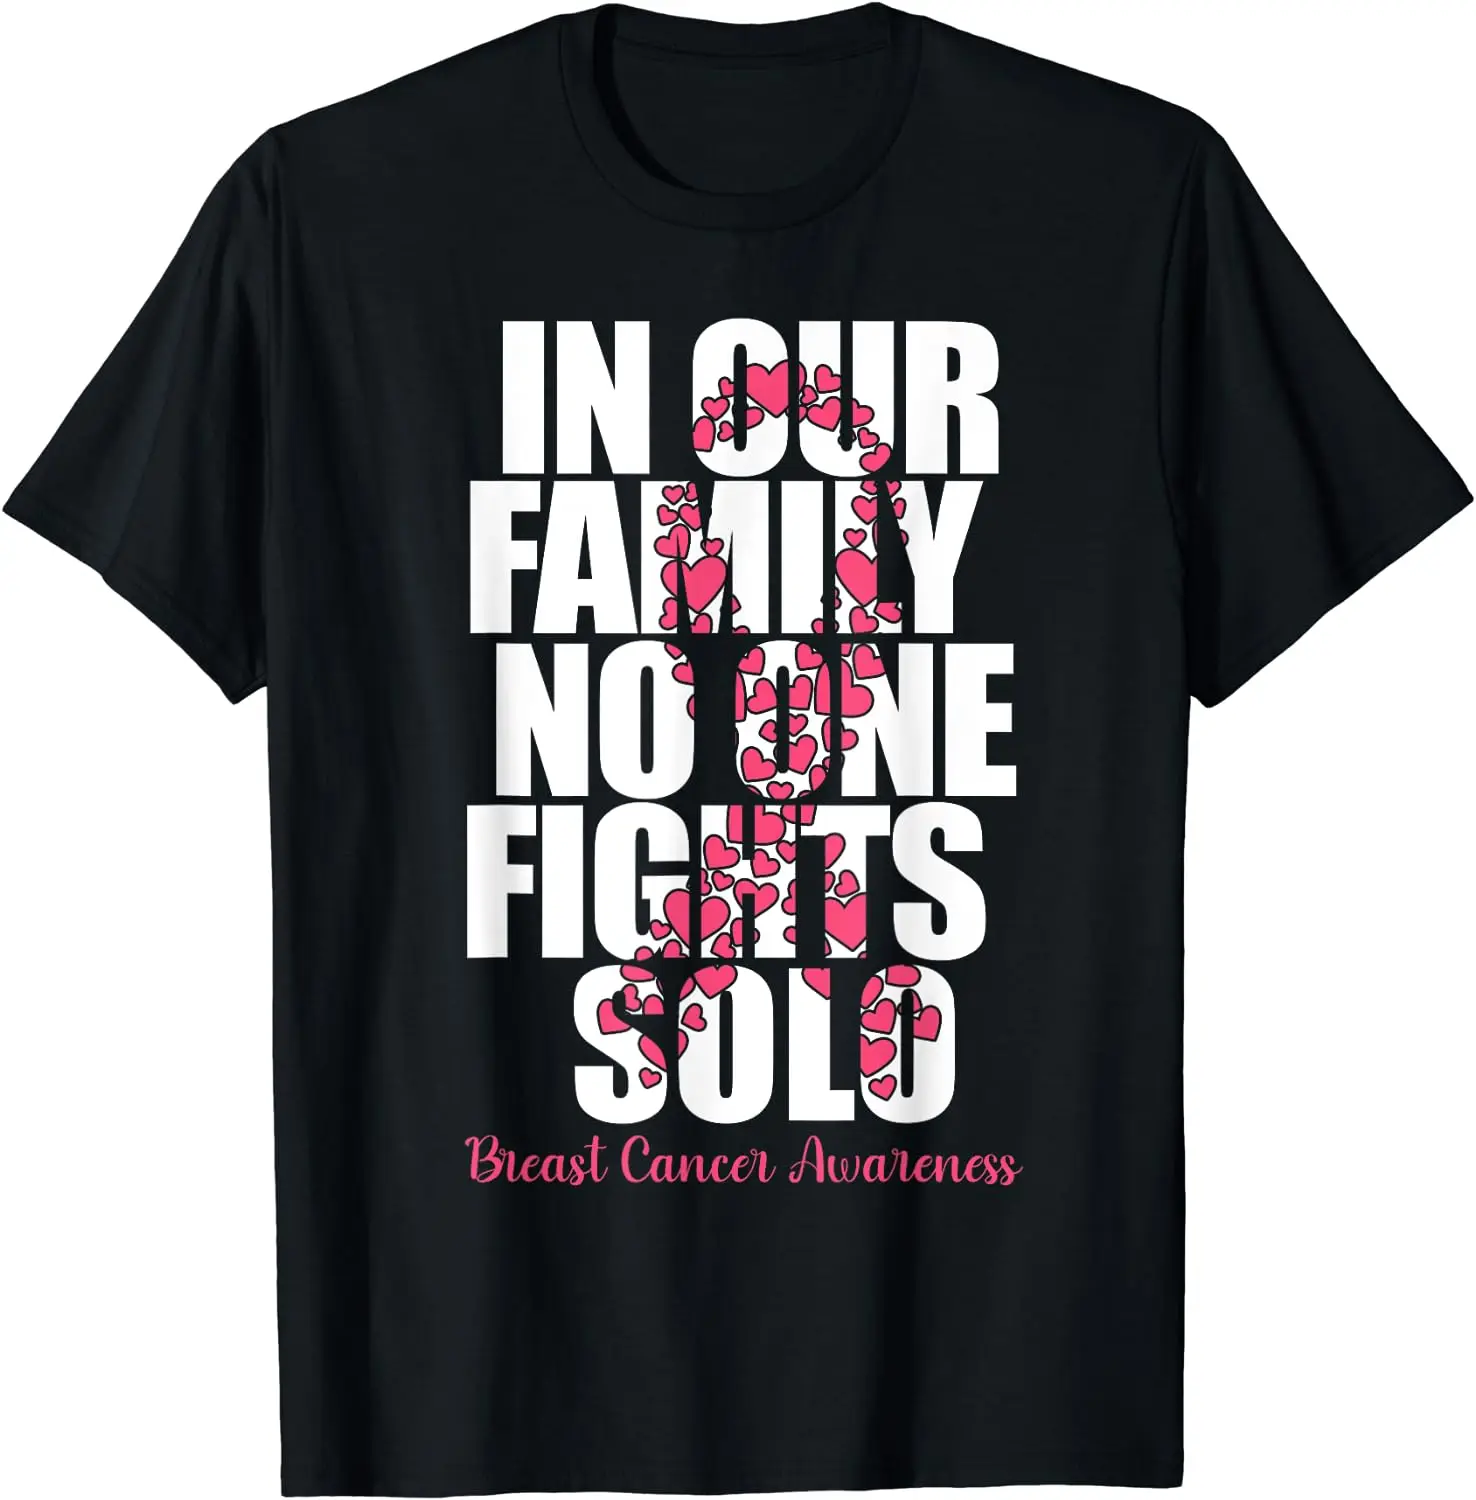 

Хлопковая футболка для мужчин и женщин, рубашка для информирования о раке груди, для всей семьи, повседневная, на все сезоны